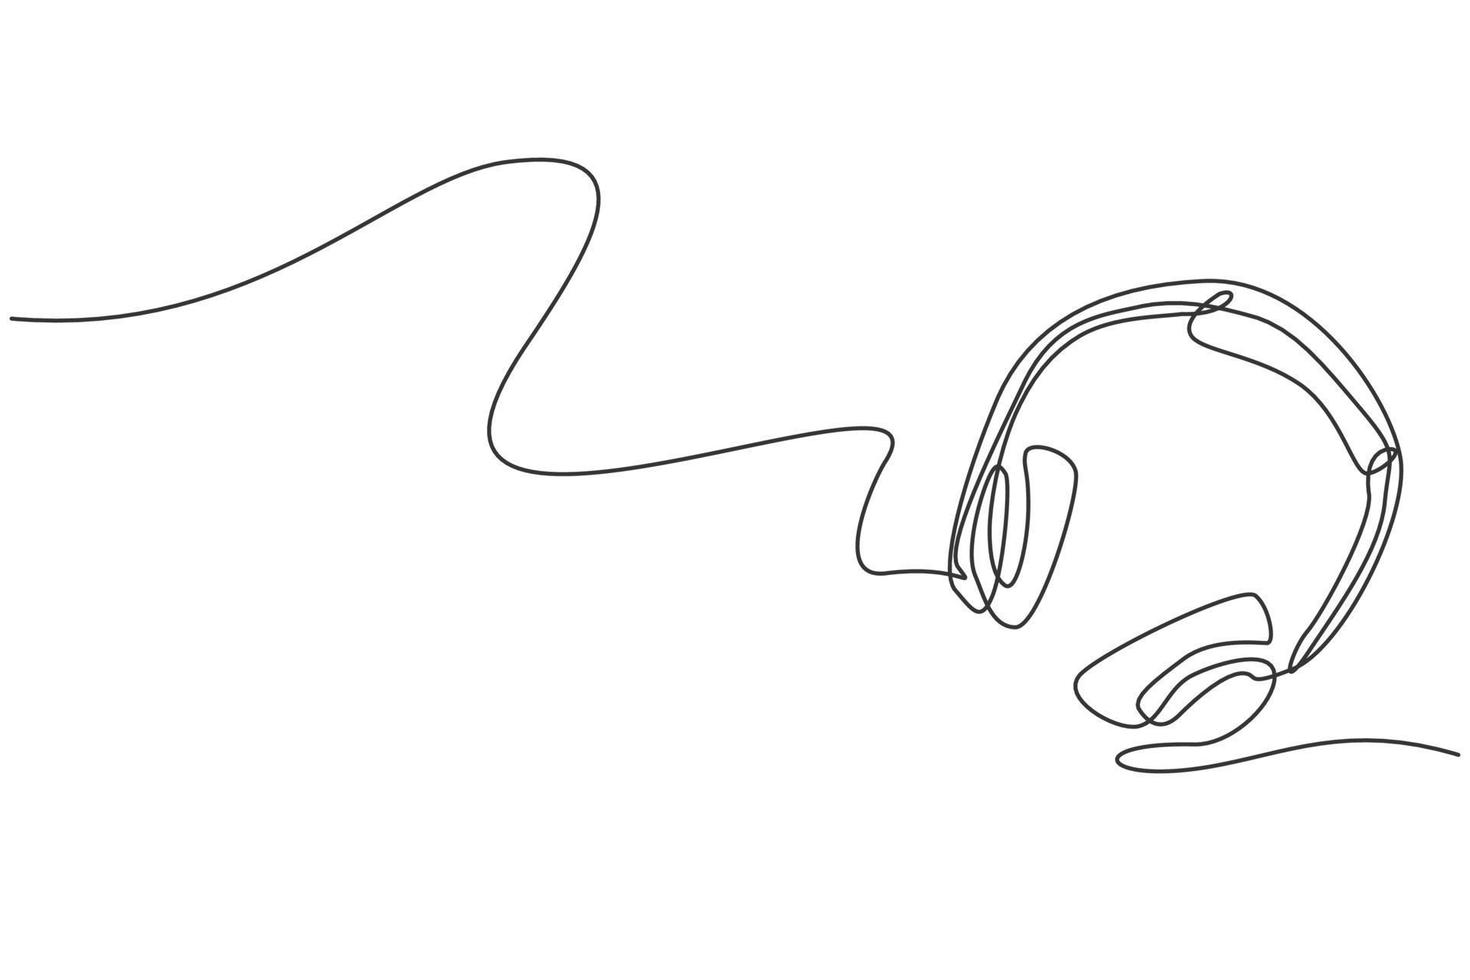 desenho de linha única contínua de fone de ouvido da vista superior. conceito de ferramentas de equipamento de gravação de música. ilustração em vetor gráfico moderno desenho de uma linha